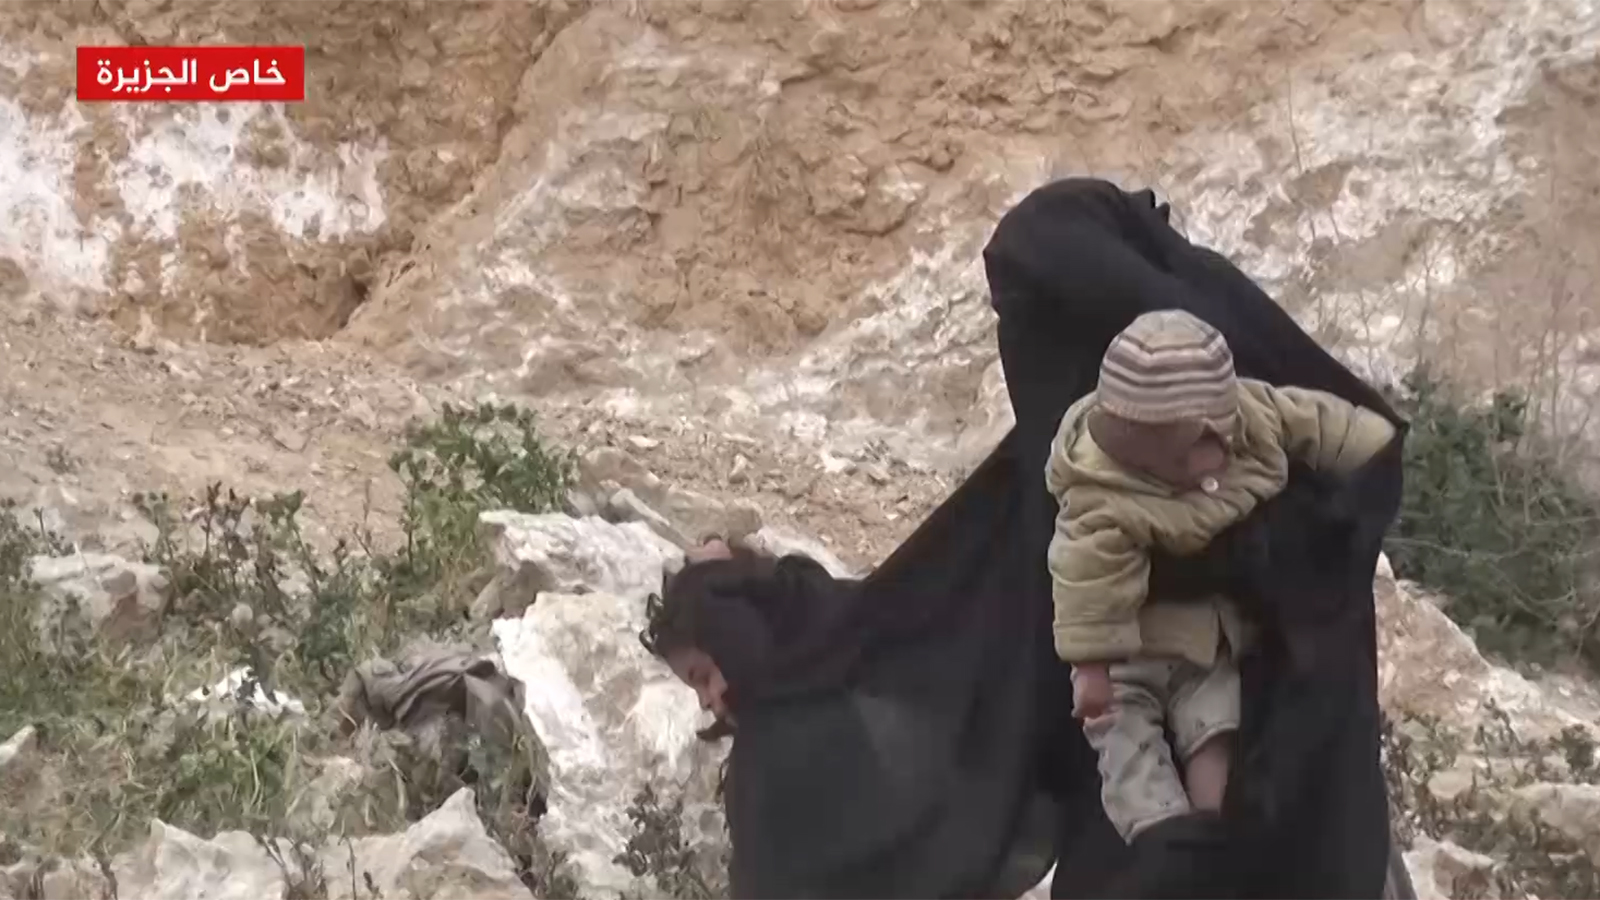 ‪خلال خروج مقاتلي تنظيم الدولة وعائلاتهم من آخر معاقلهم شرقي سوريا‬ (الجزيرة-أرشيف)